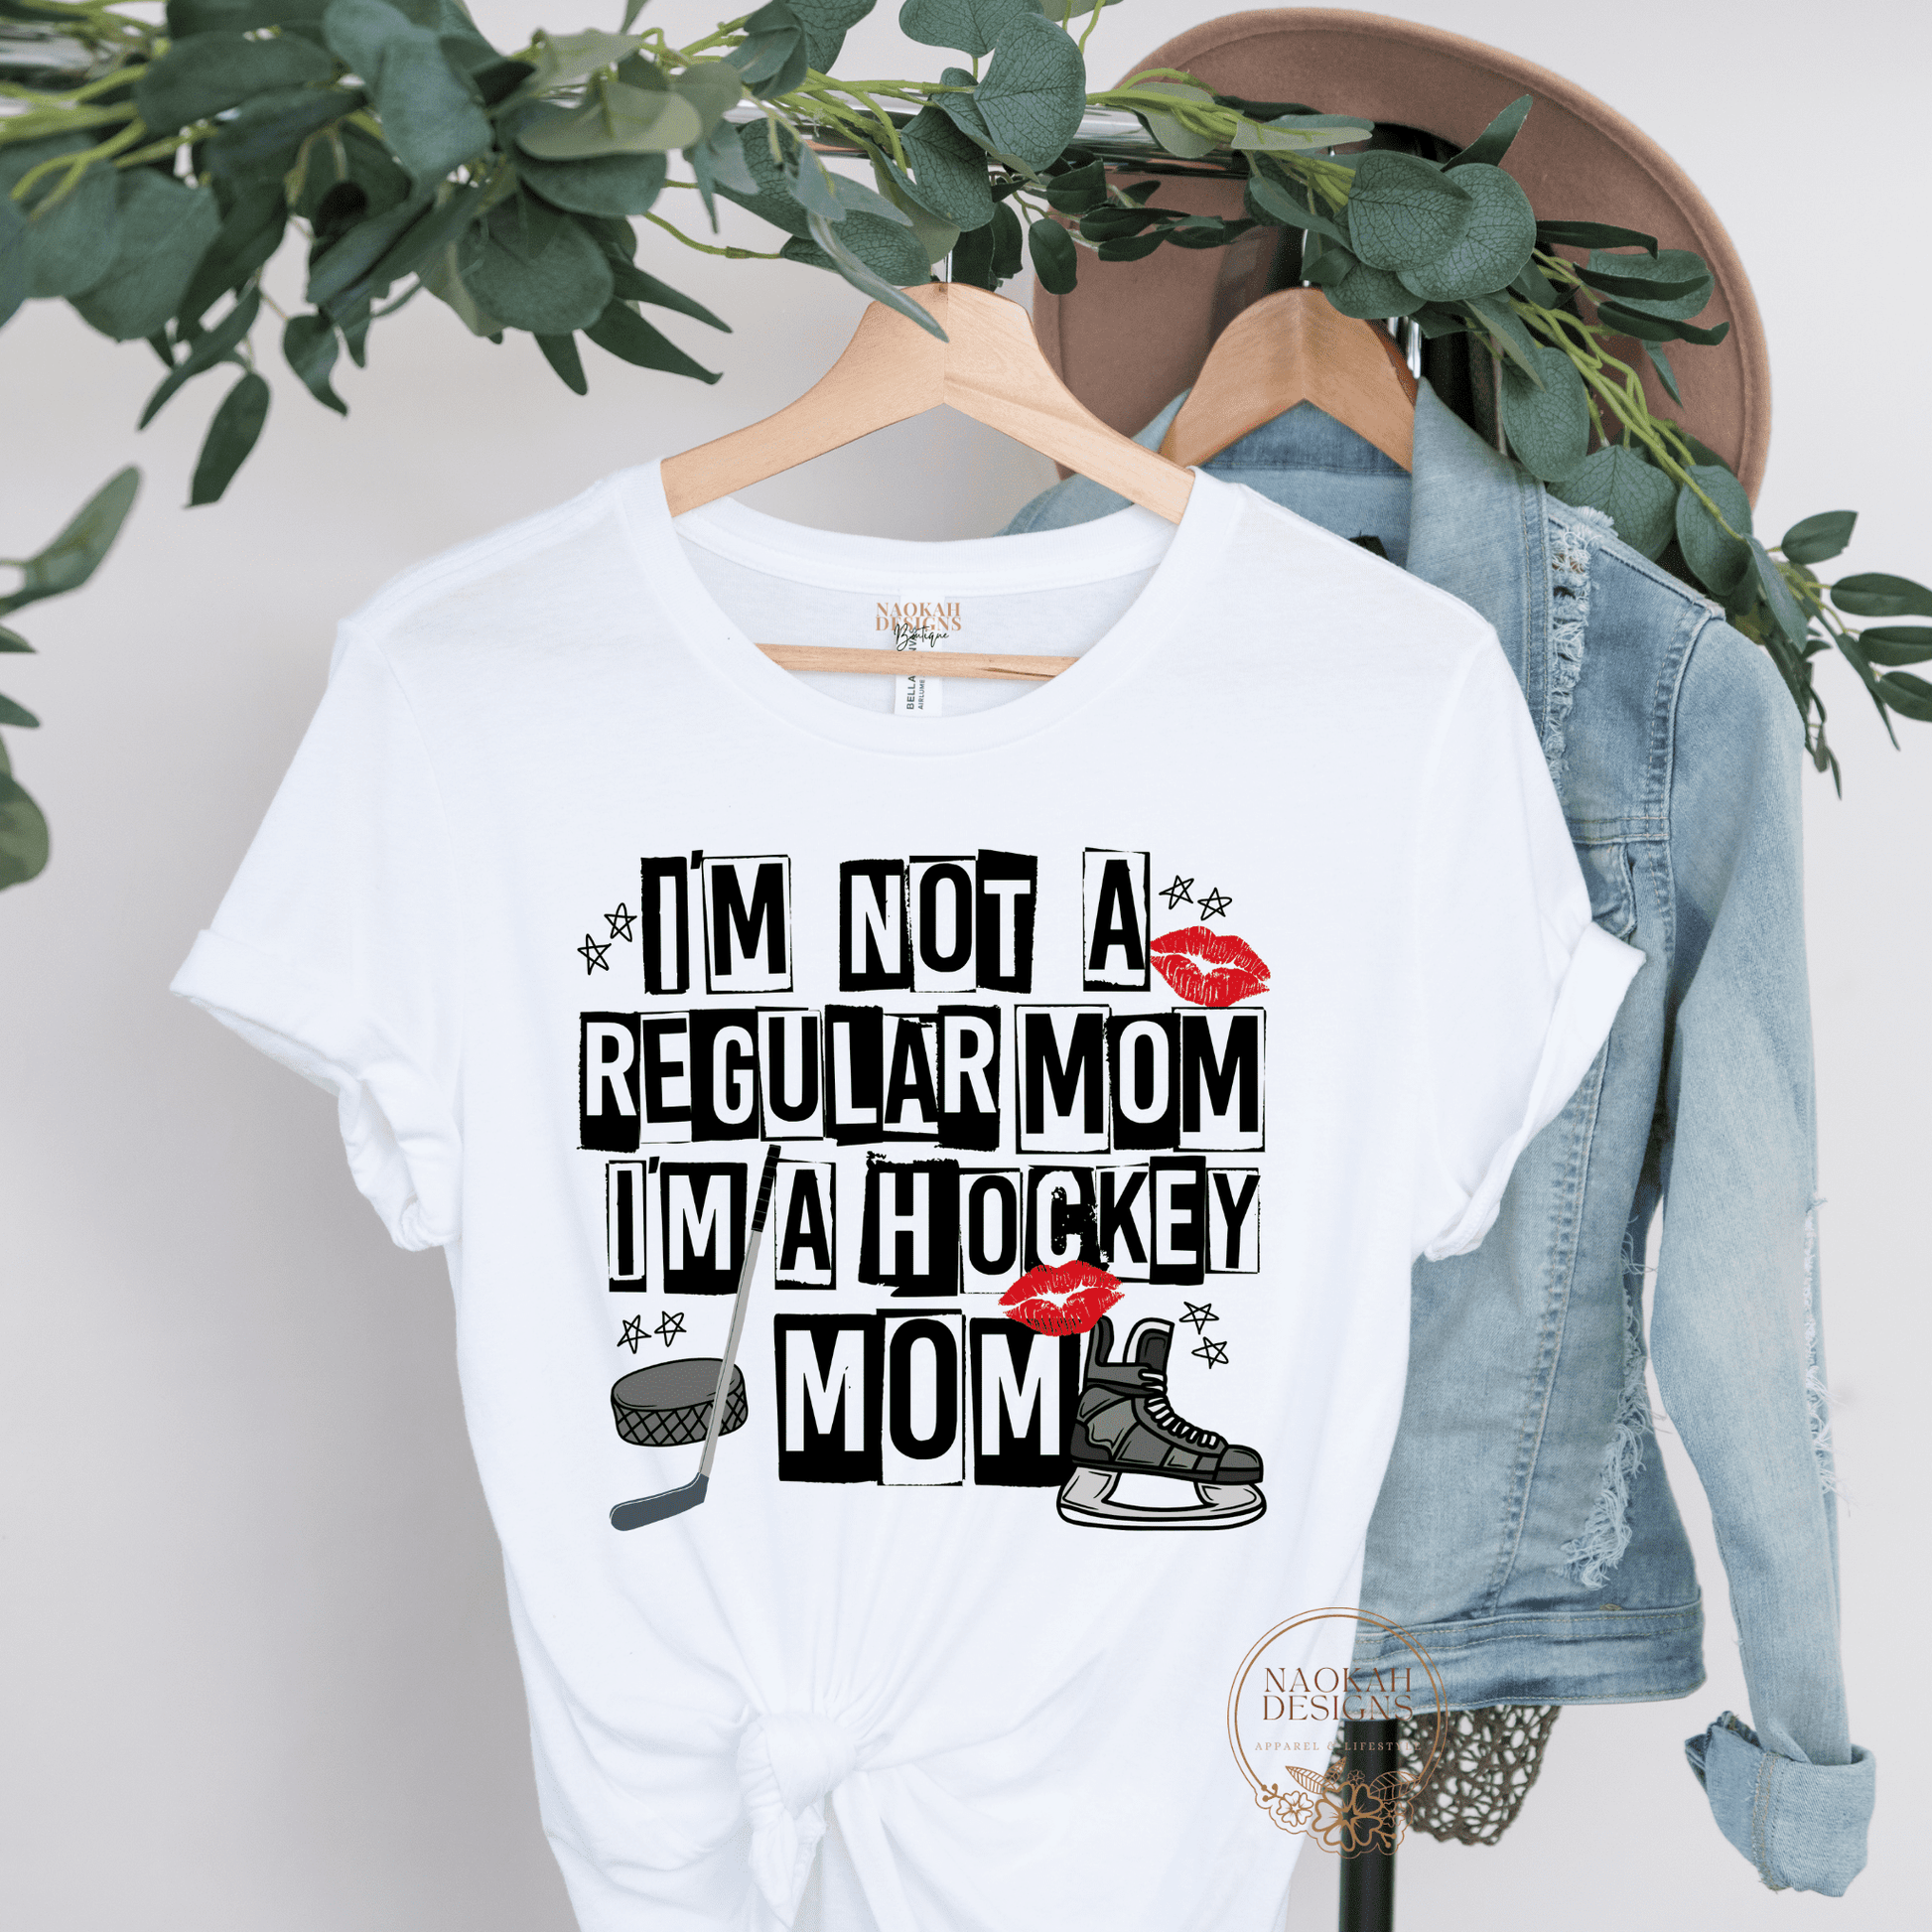 I'm not a regular mom I'm a hockey mom shirt, hockey mom gift, hockey mom hat, hockey fan, hockey sweatshirt, hockey lover gift, hockey mom gift, hockey mom shirt 